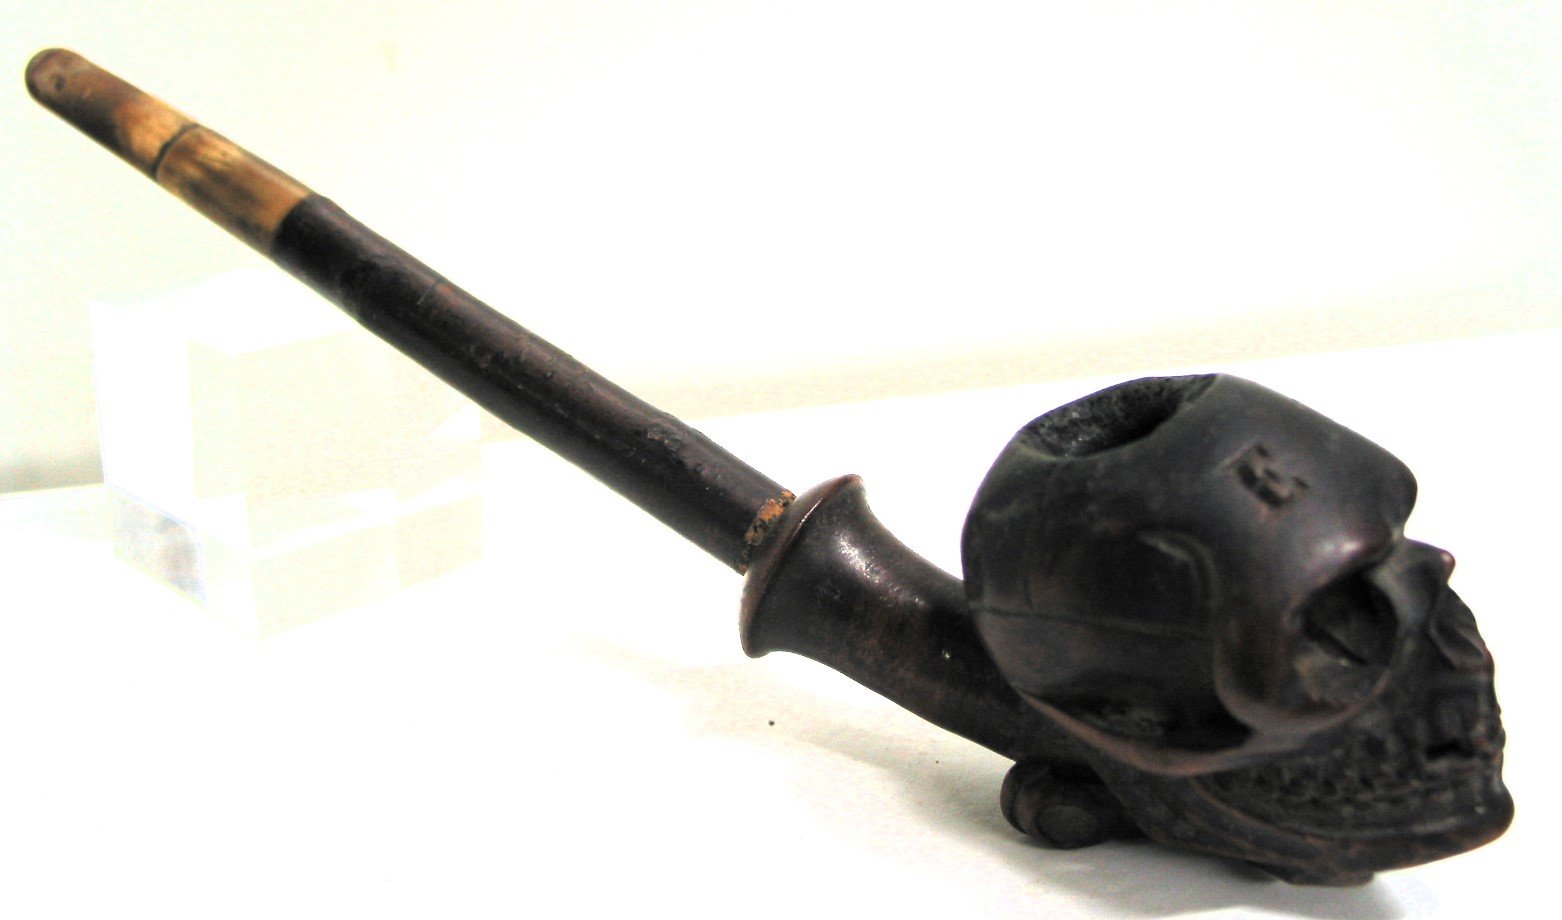 Tabakpfeife mit Totenschädel-Pfeifenkopf (Museum für Sepulkralkultur CC0)